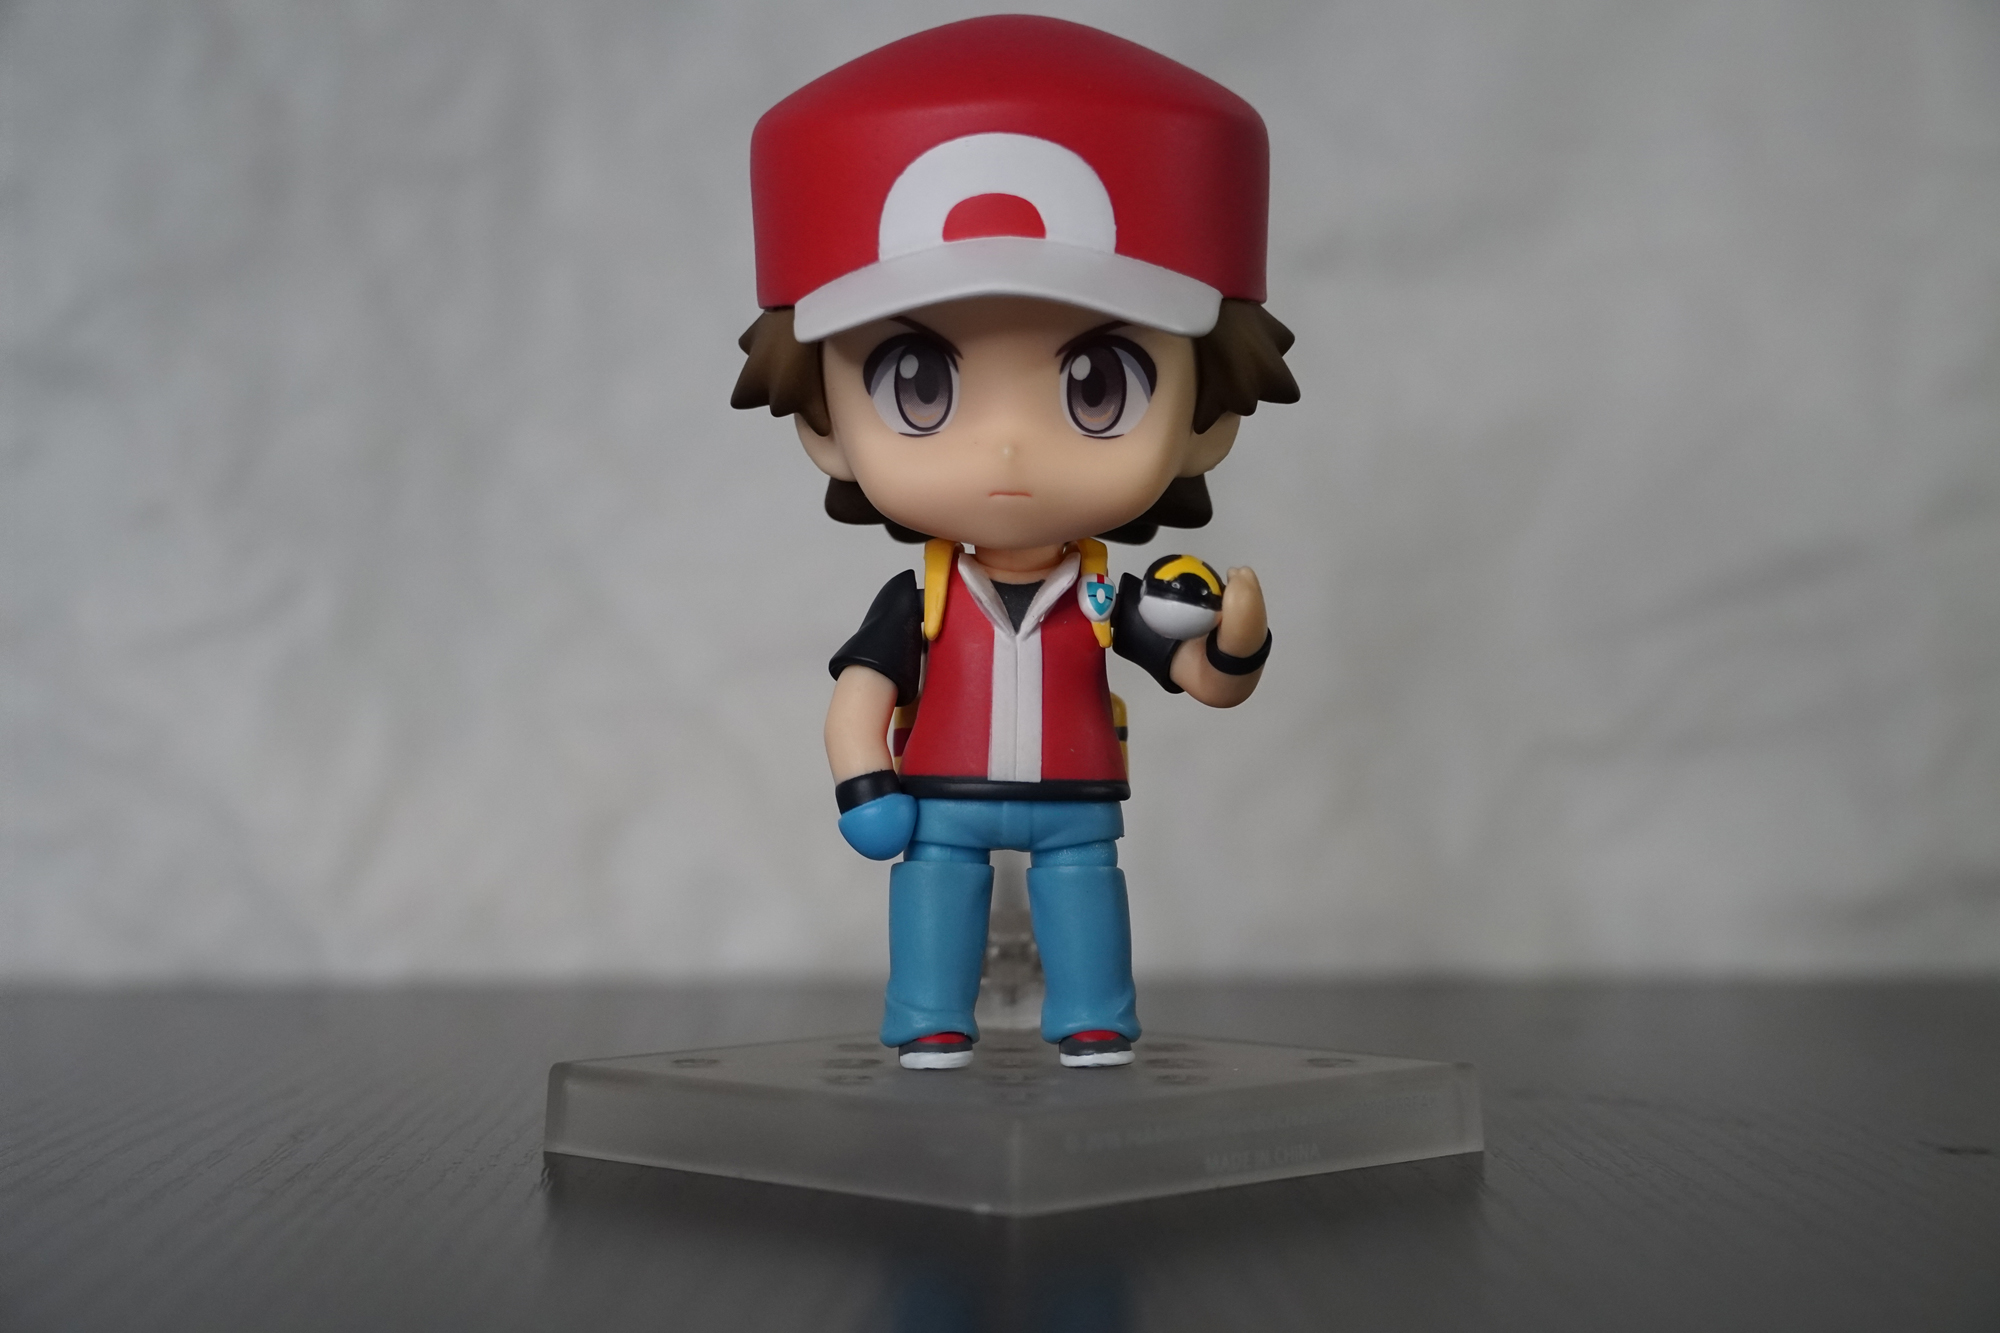 Nendoroid Pokémon Trainer Red: Champion Ver. Posable Figure